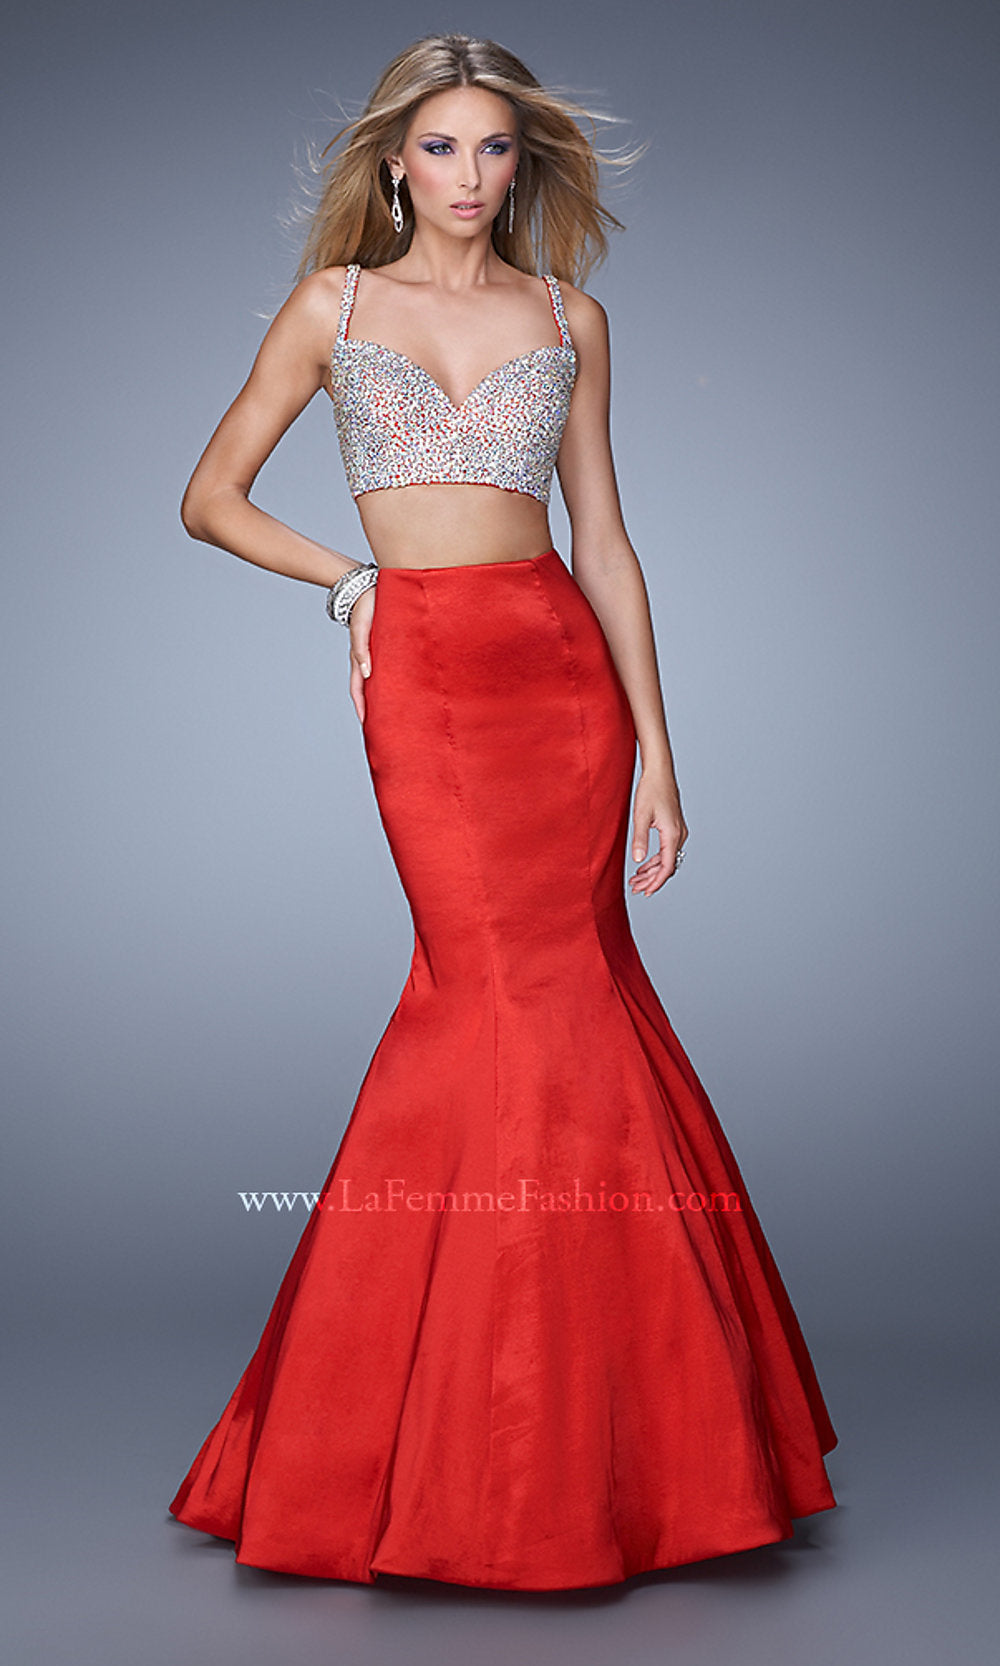  Beaded-Top La Femme Two-Piece Mermaid Prom Dress